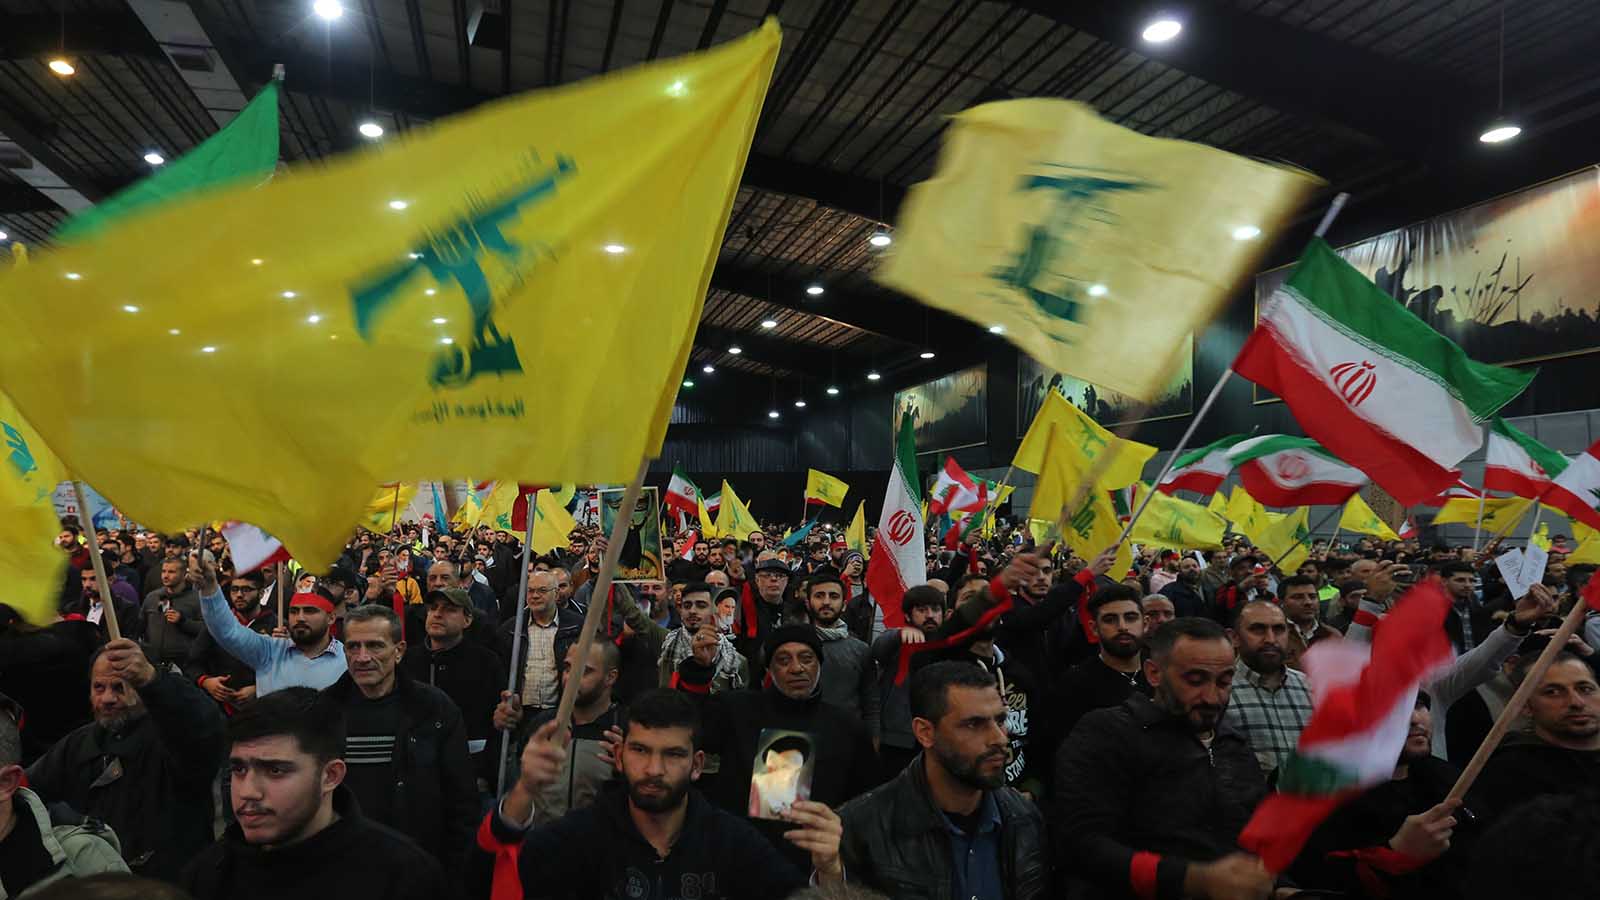 ملايين الدولارات مقابل معلومات عن سبعة من حزب الله